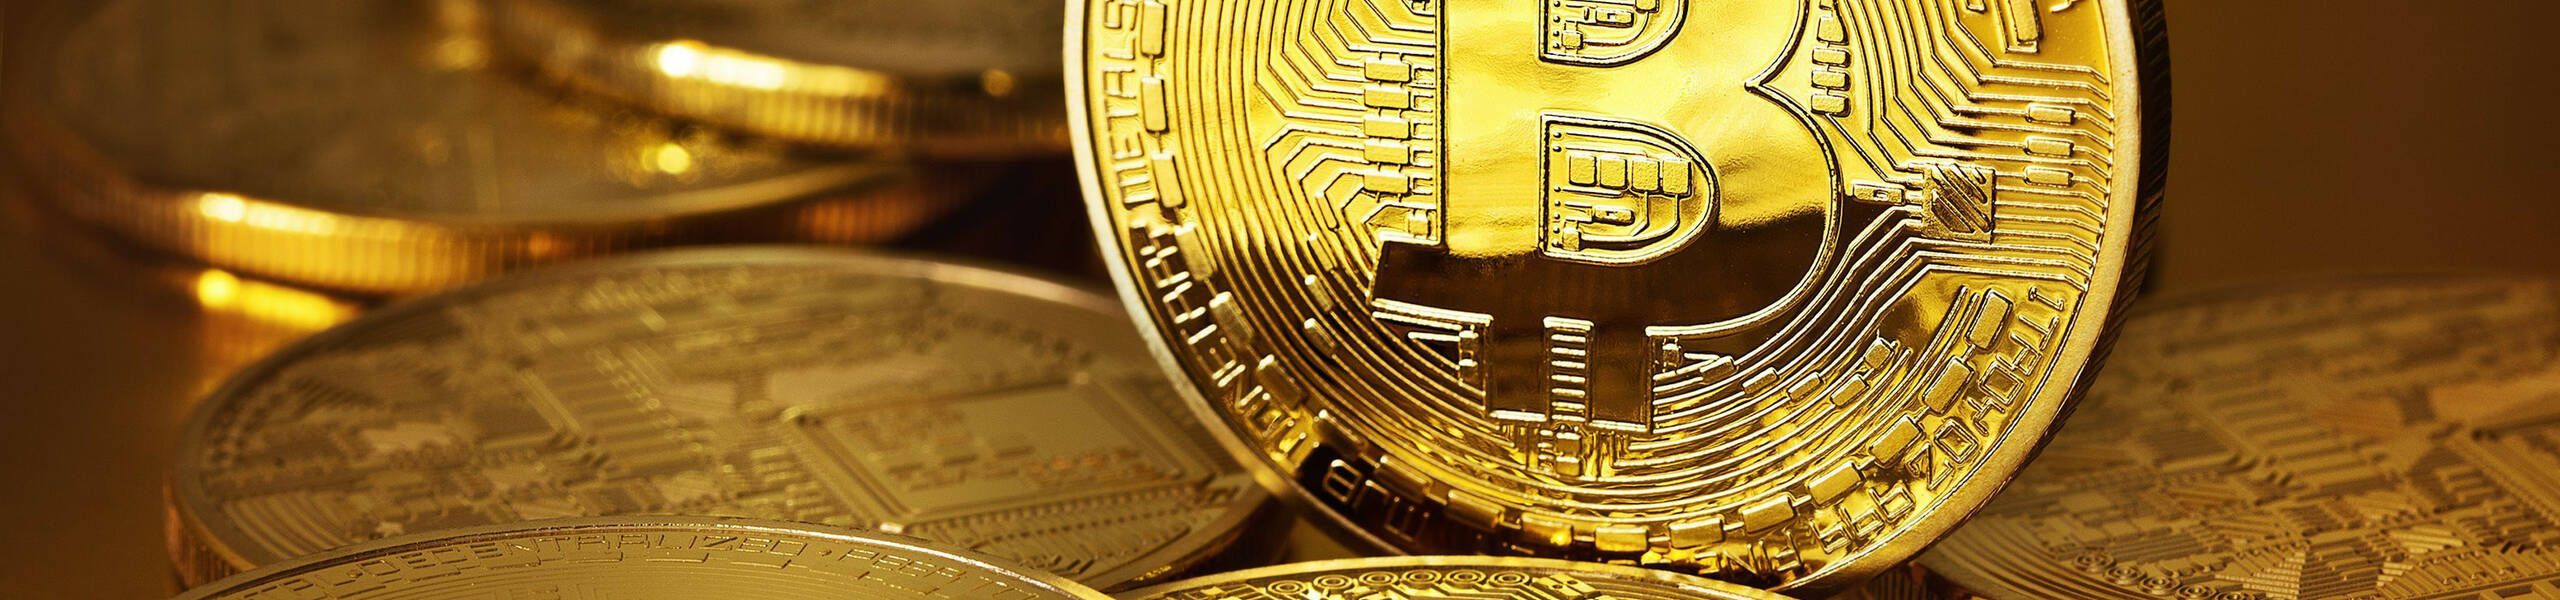 Bitcoin bate novo recorde histórico